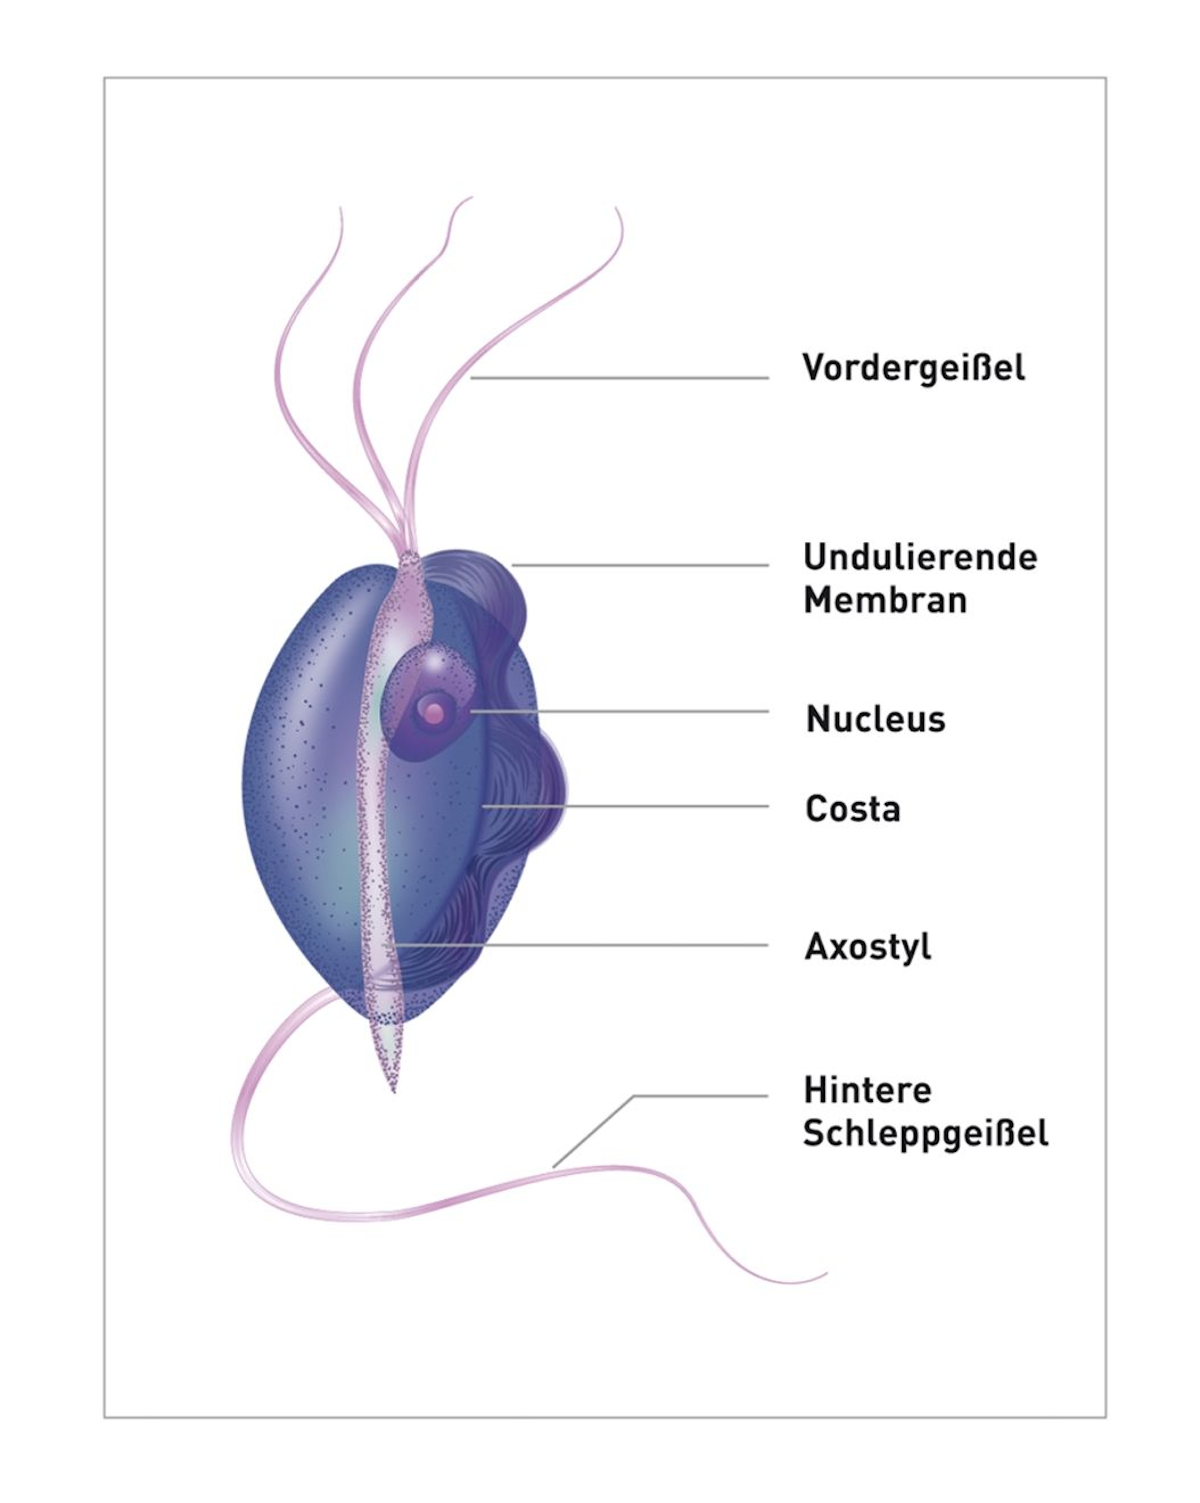 T. foetus ist etwa 10-26 µm lang, etwa 3-5 µm breit und wird oft als „birnenförmig“ oder „spindelförmig“ beschrieben. Jeder Organismus besitzt drei Vordergeißeln für die Beweglichkeit.